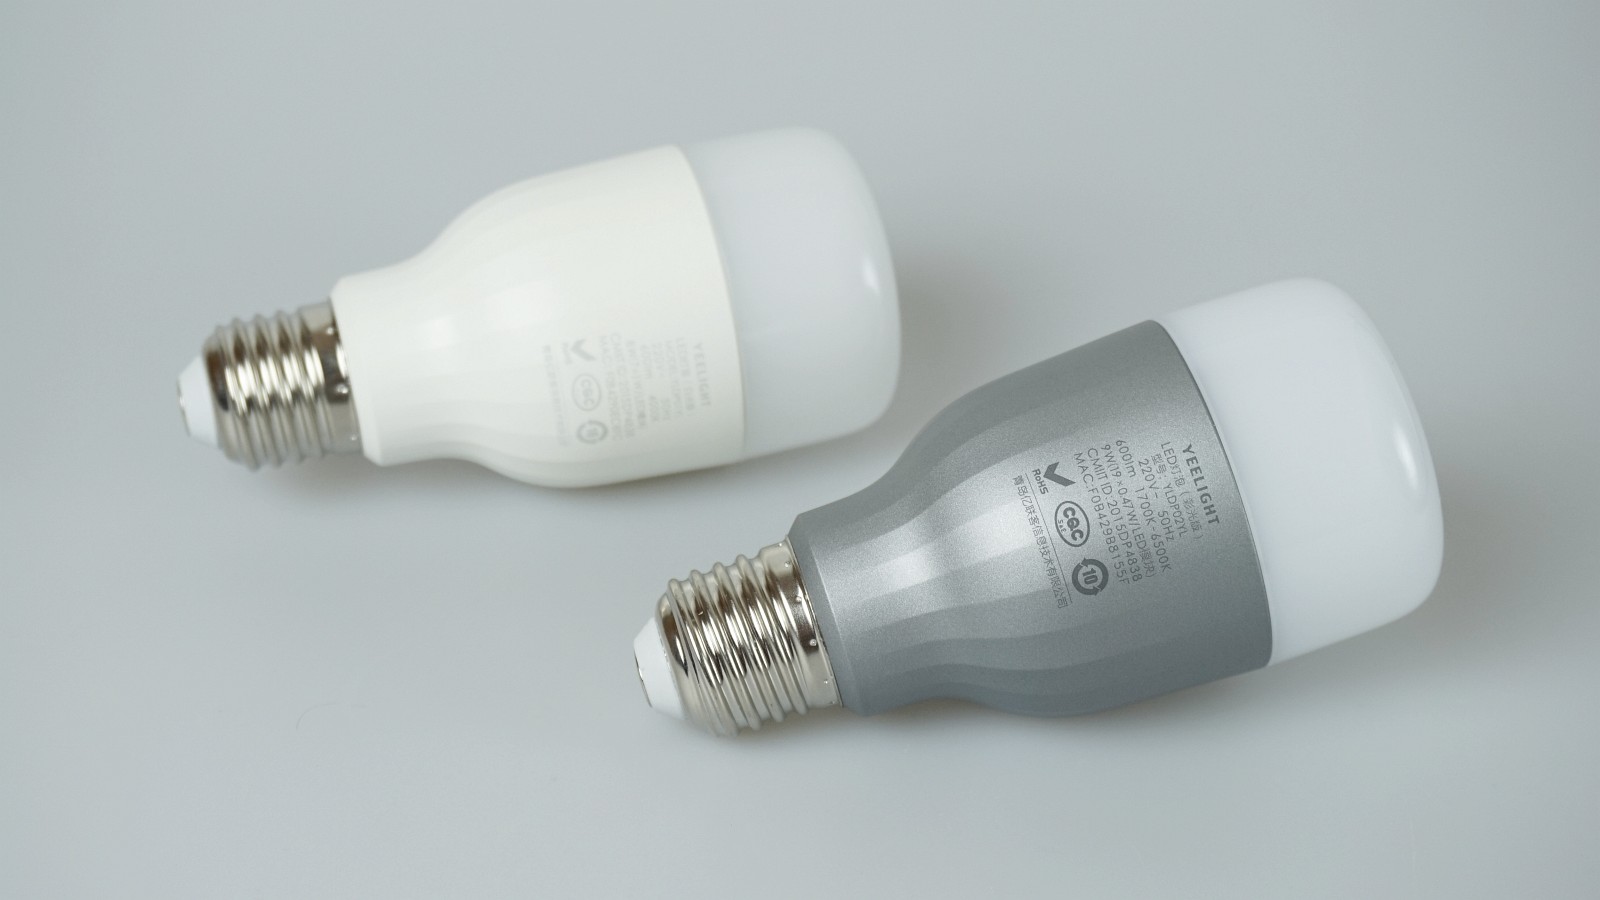 Yeelight: Cheapest Amazon Alexa Certified Smart LED Lightbulb